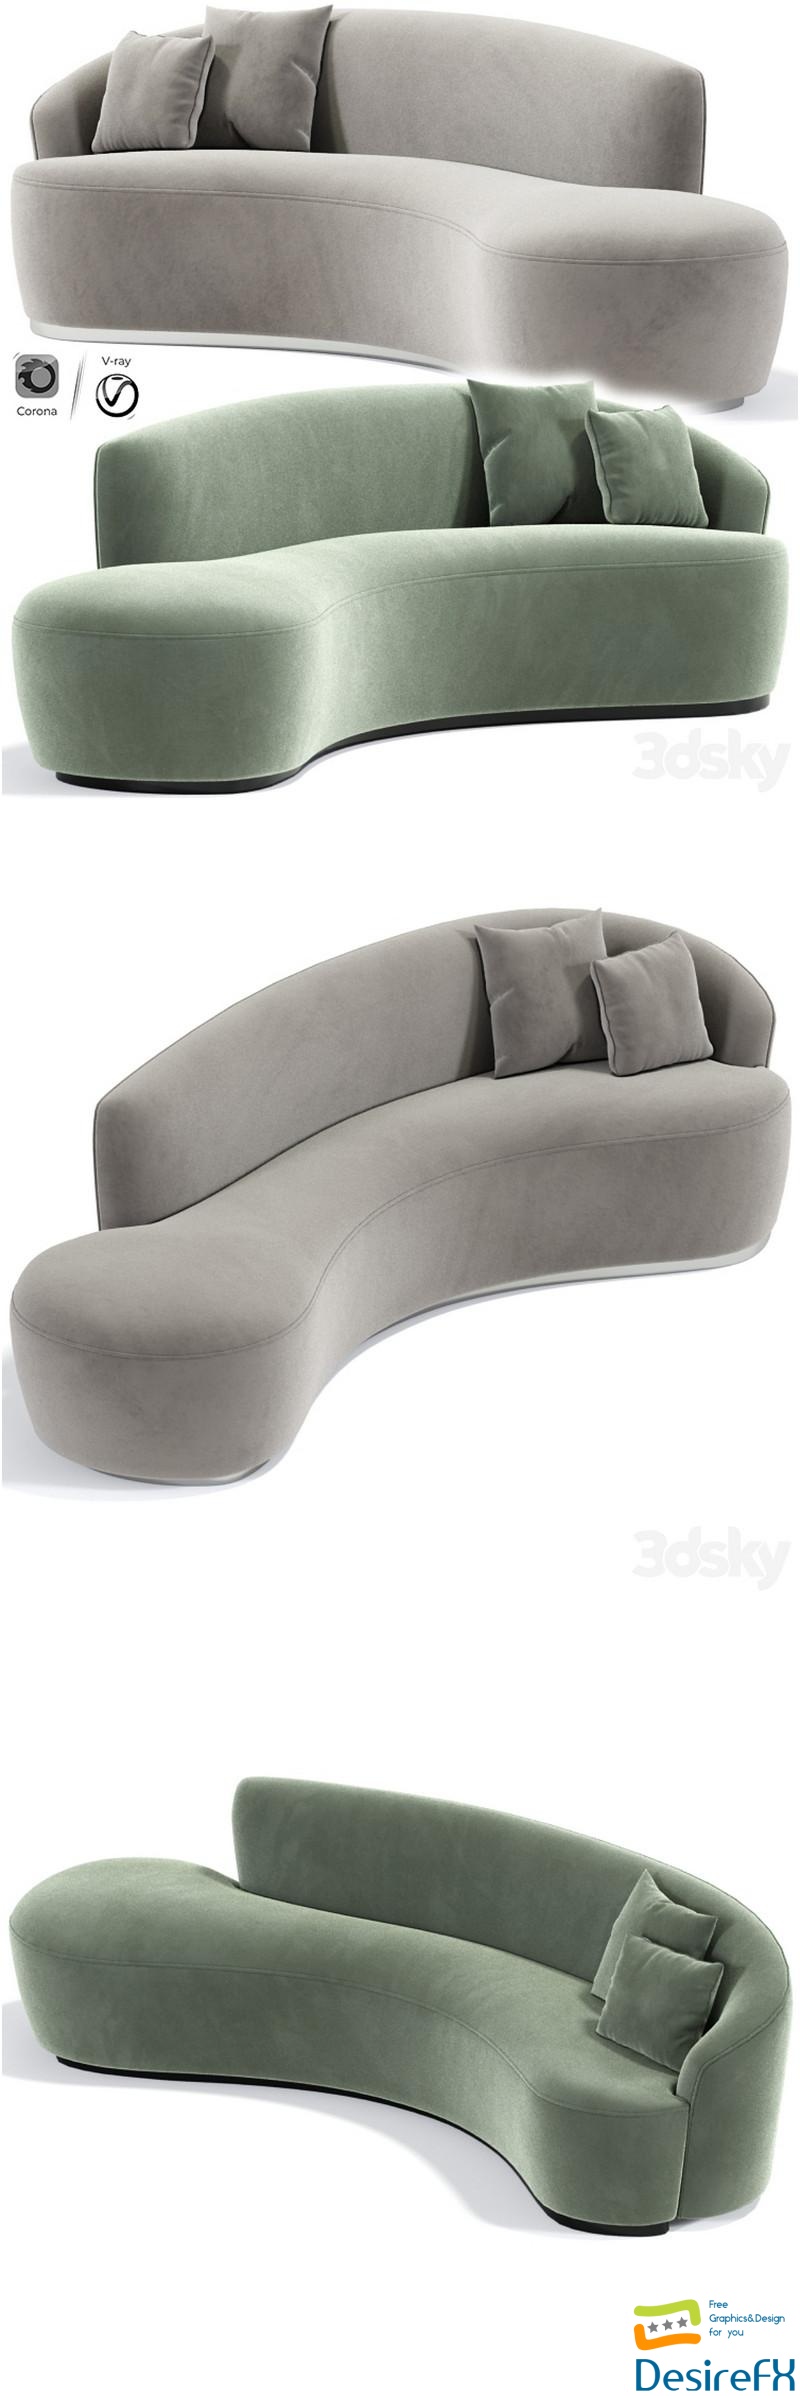 Italian Inspired Modern Curved Sofa 3D Model